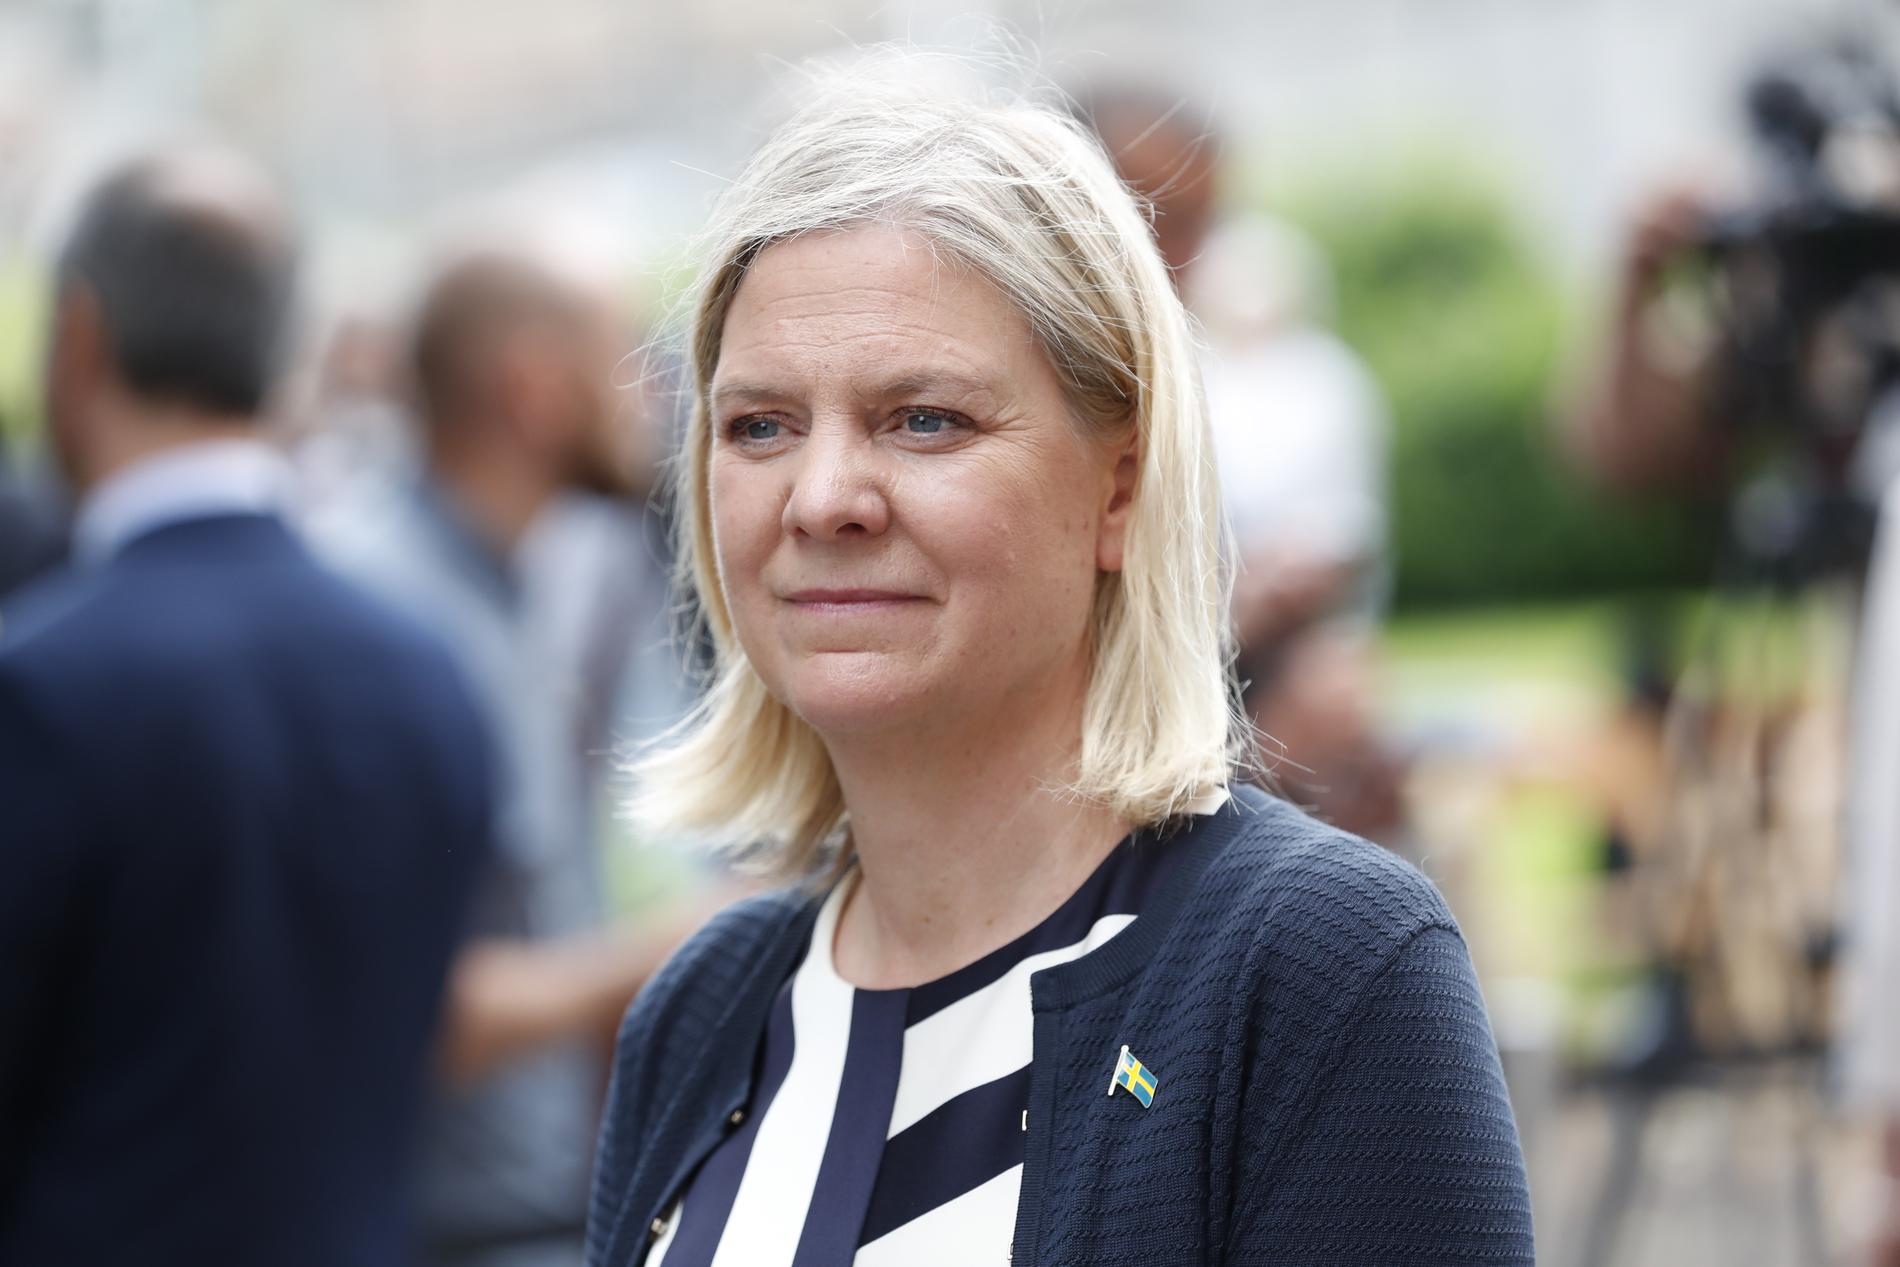 ”Sveriges finansminister, förmodligen landets mest inflytelserika kvinnliga politiker de senaste åren, är lika oskriven som i princip alla manliga toppolitiker”, skriver Johanna Frändén.